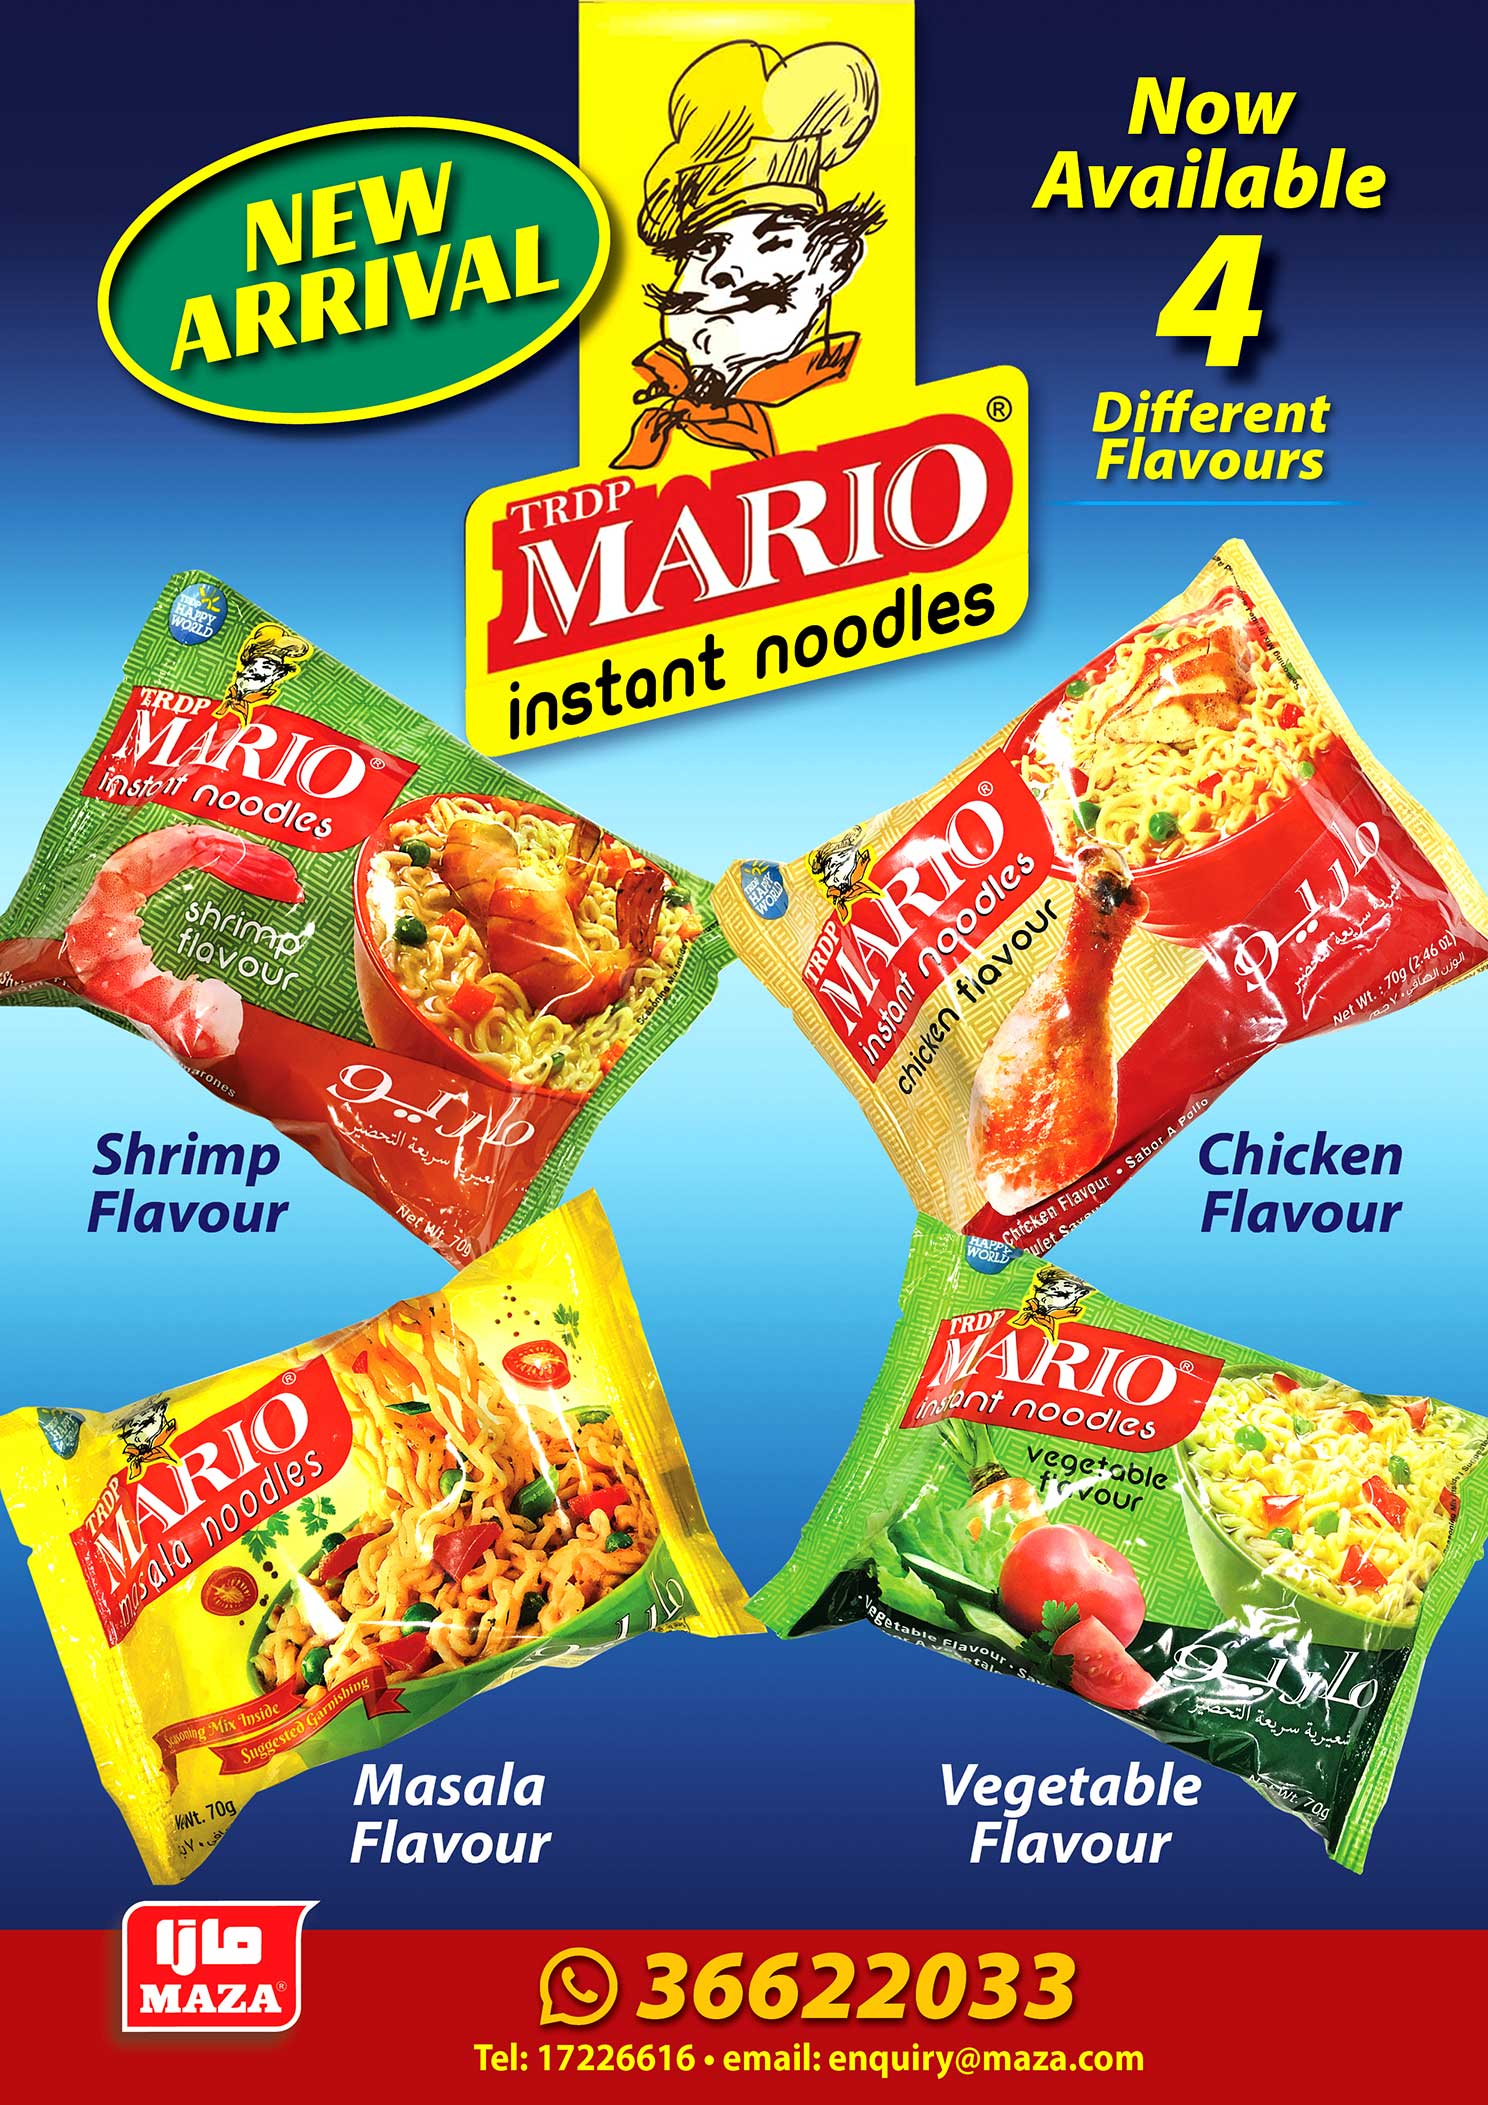 MARIO Instant Noodles